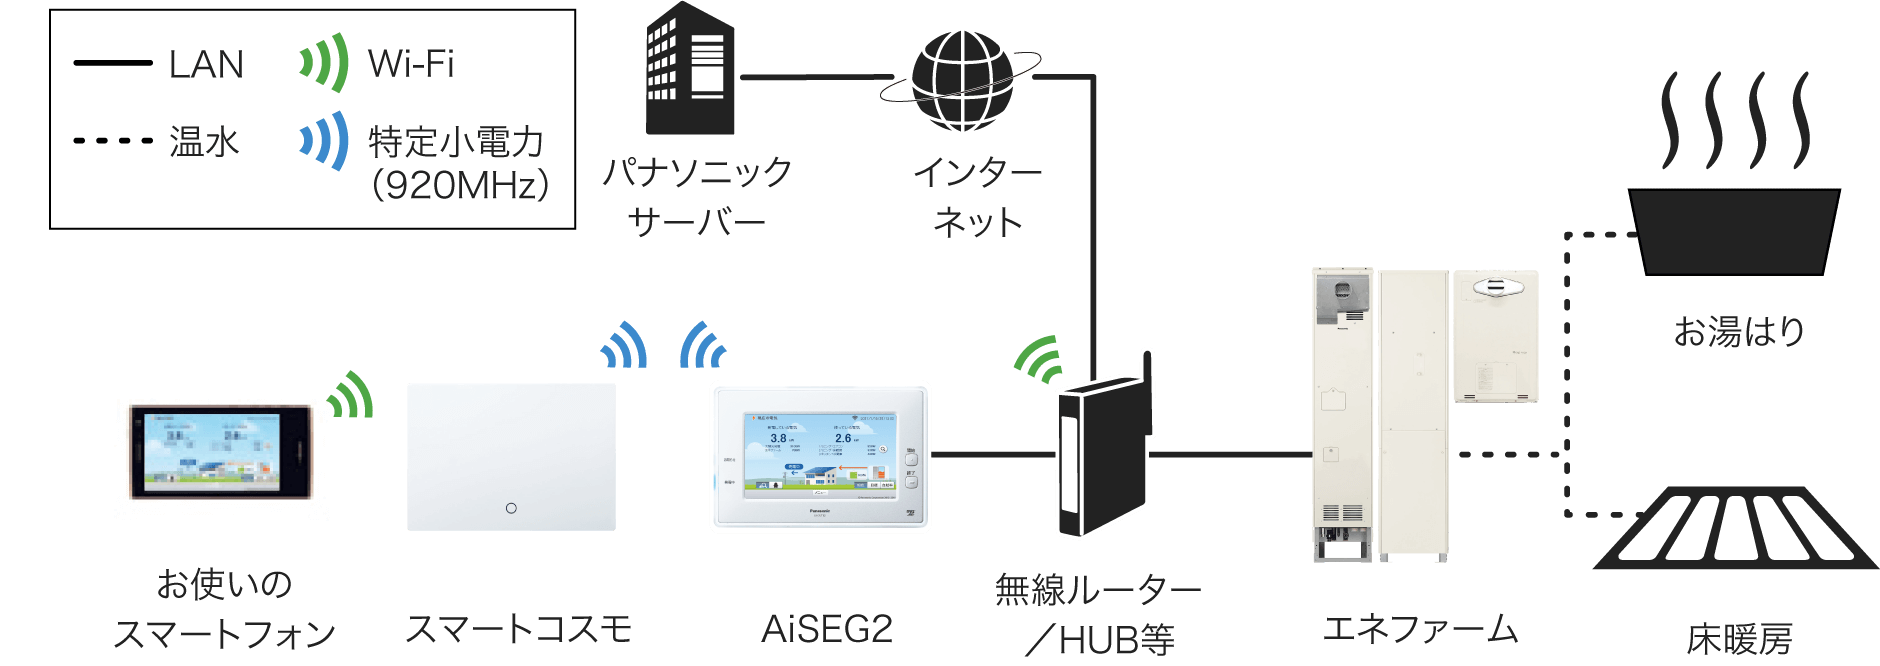 HOME IoT（AiSEG2）とエネファーム/おふろ/床暖房の接続イメージ：エネファーム、およびAiSEG2と無線ルーター/HUB間はLAN接続、無線ルーター/HUBとパナソニックサーバー間はLANによるインターネット接続、AiSEG2とスマートコスモ間は特定小電力無線(920MHz)、スマートフォンと無線ルーター間はWi-Fi接続、エネファームとおふろ・床暖房間は温水